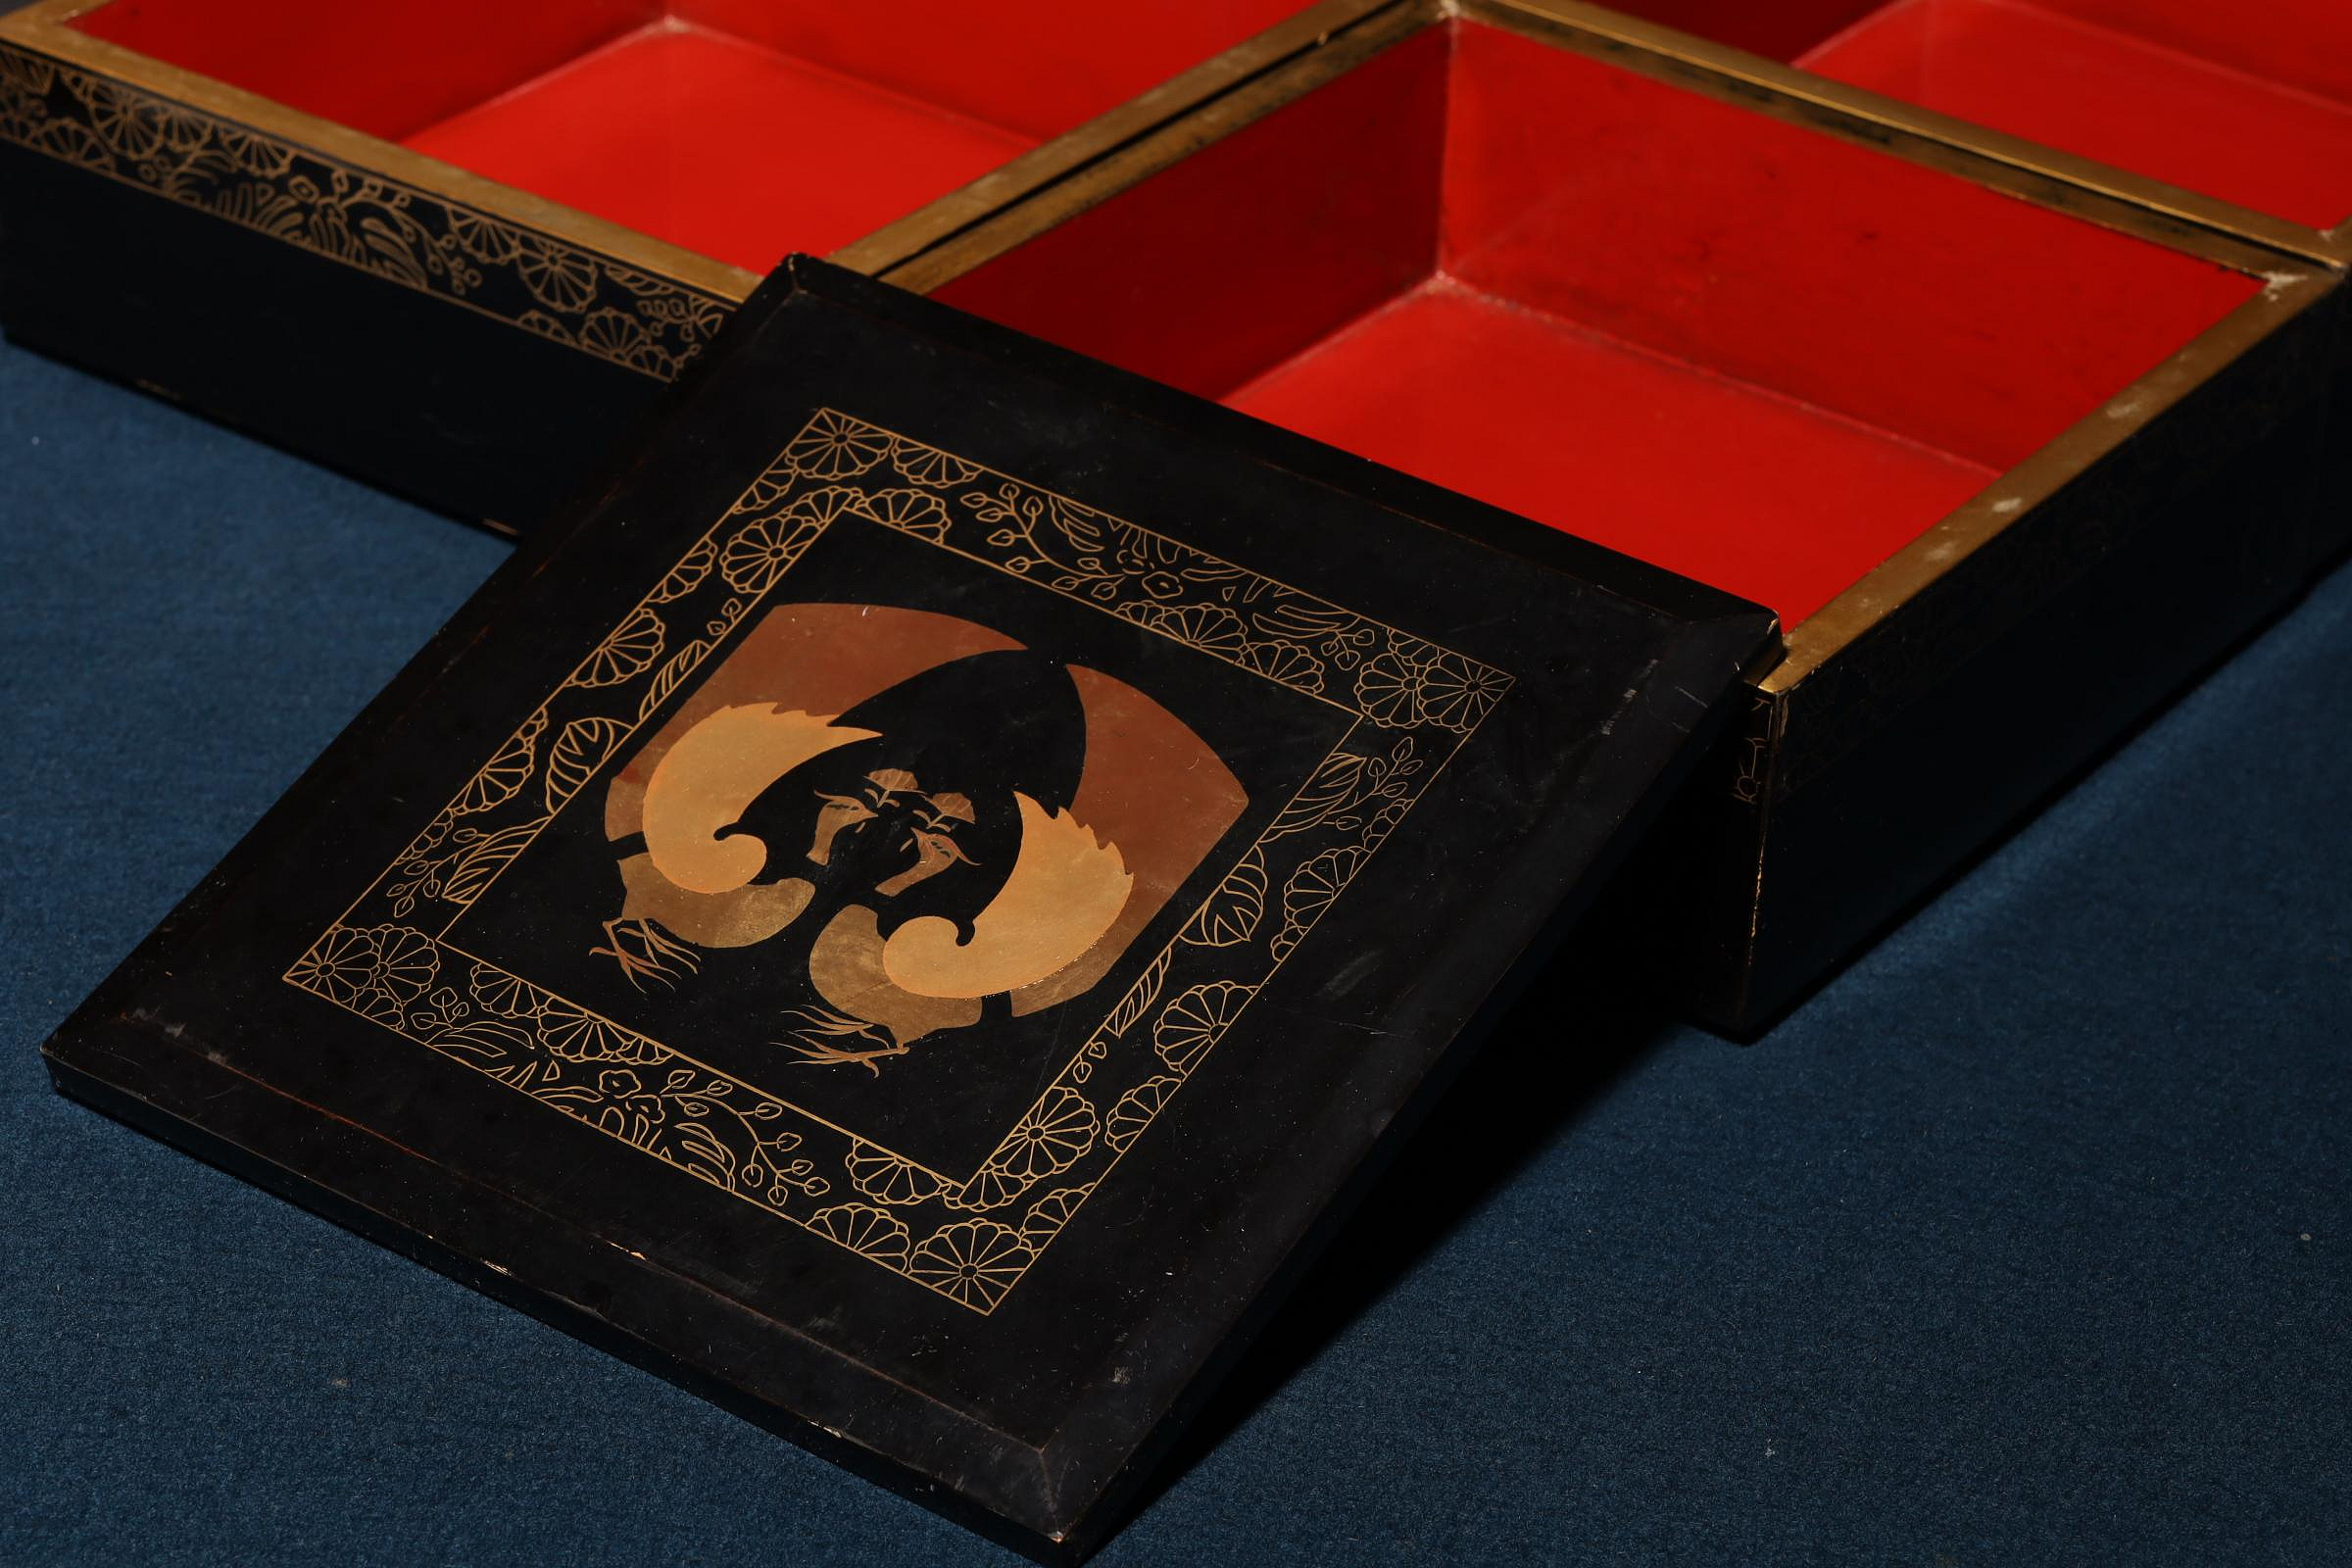 2/29結標木胎漆器蒔繪重箱茶餅盒B020924 –漆碗漆盤漆盒茶箱重箱承盤 